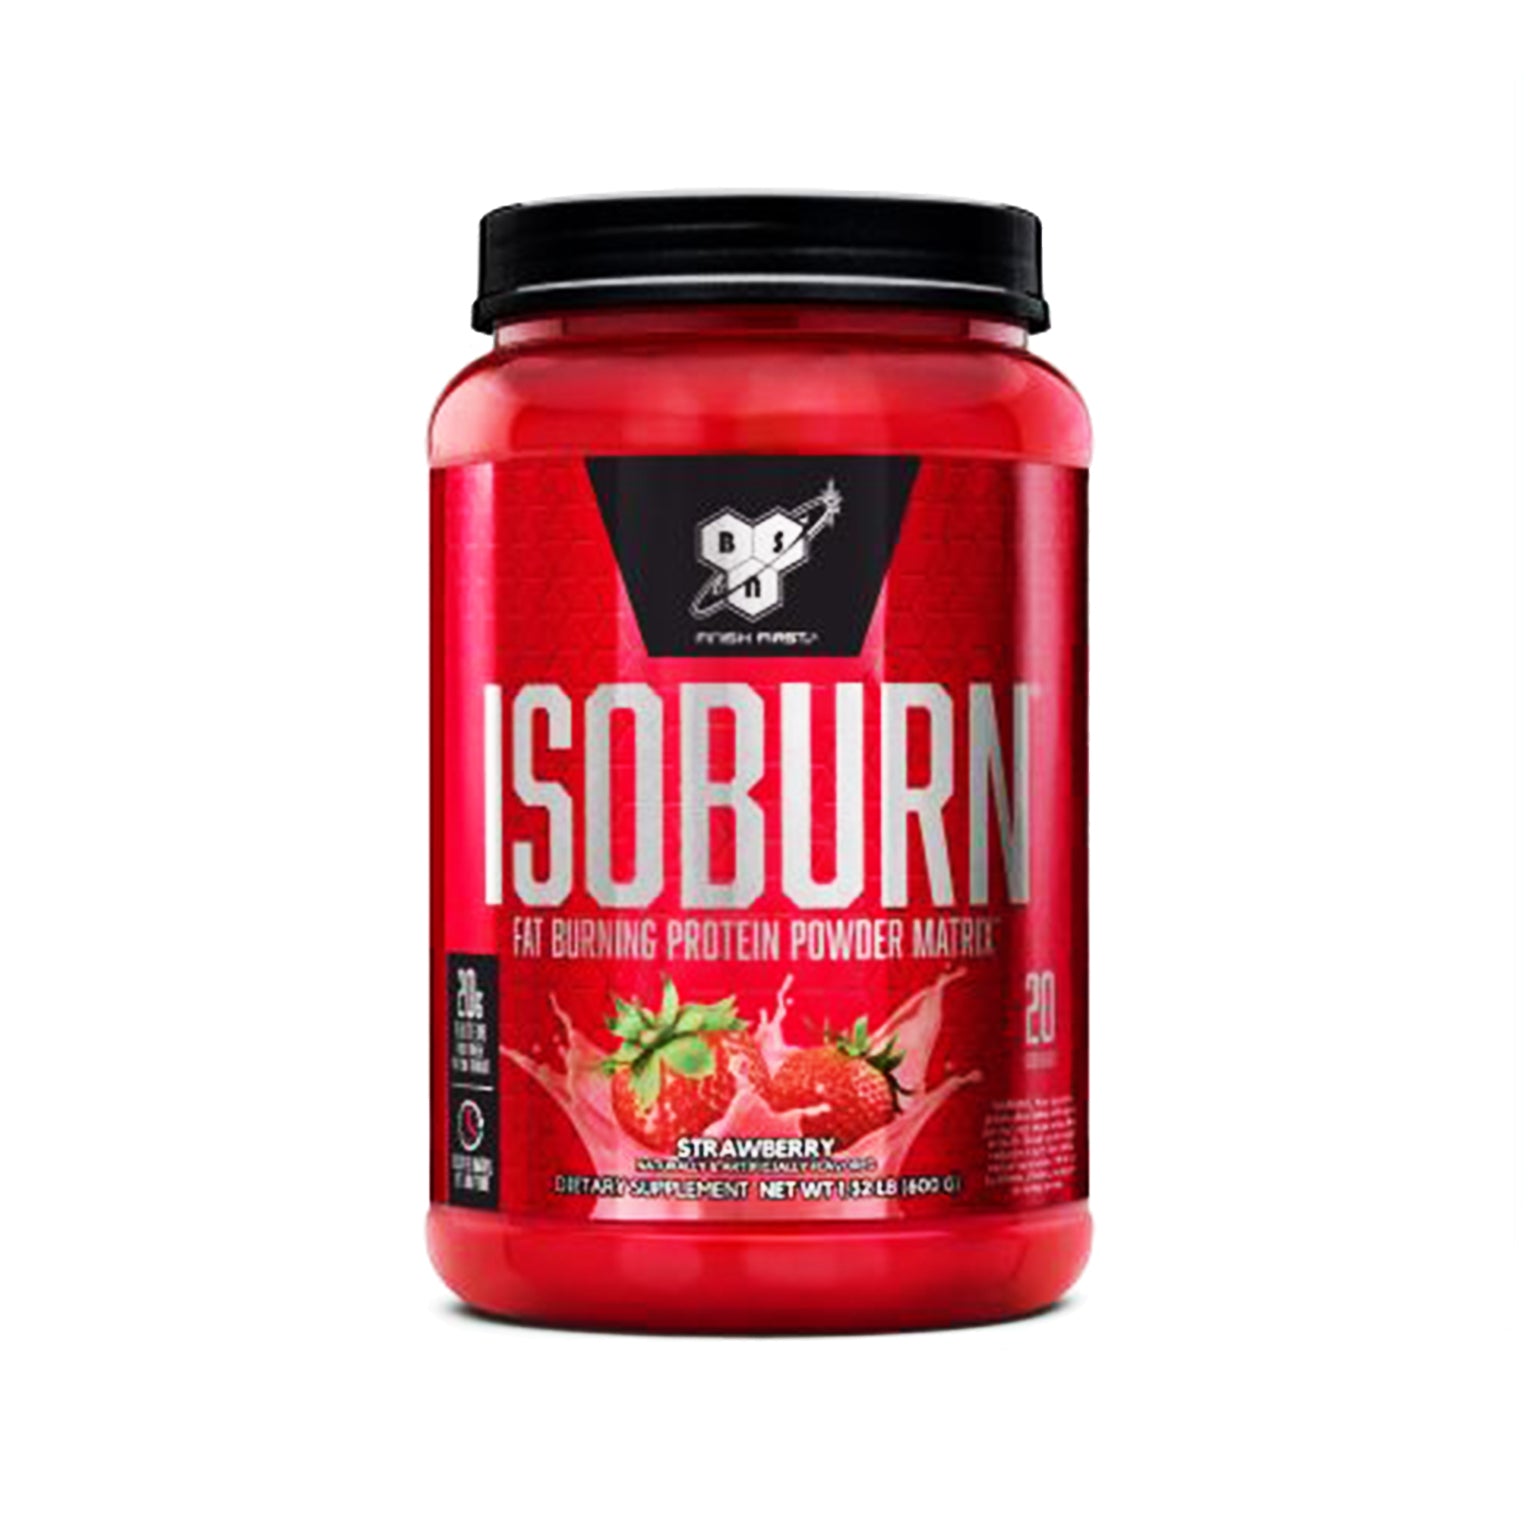 isoburn strawberry powder